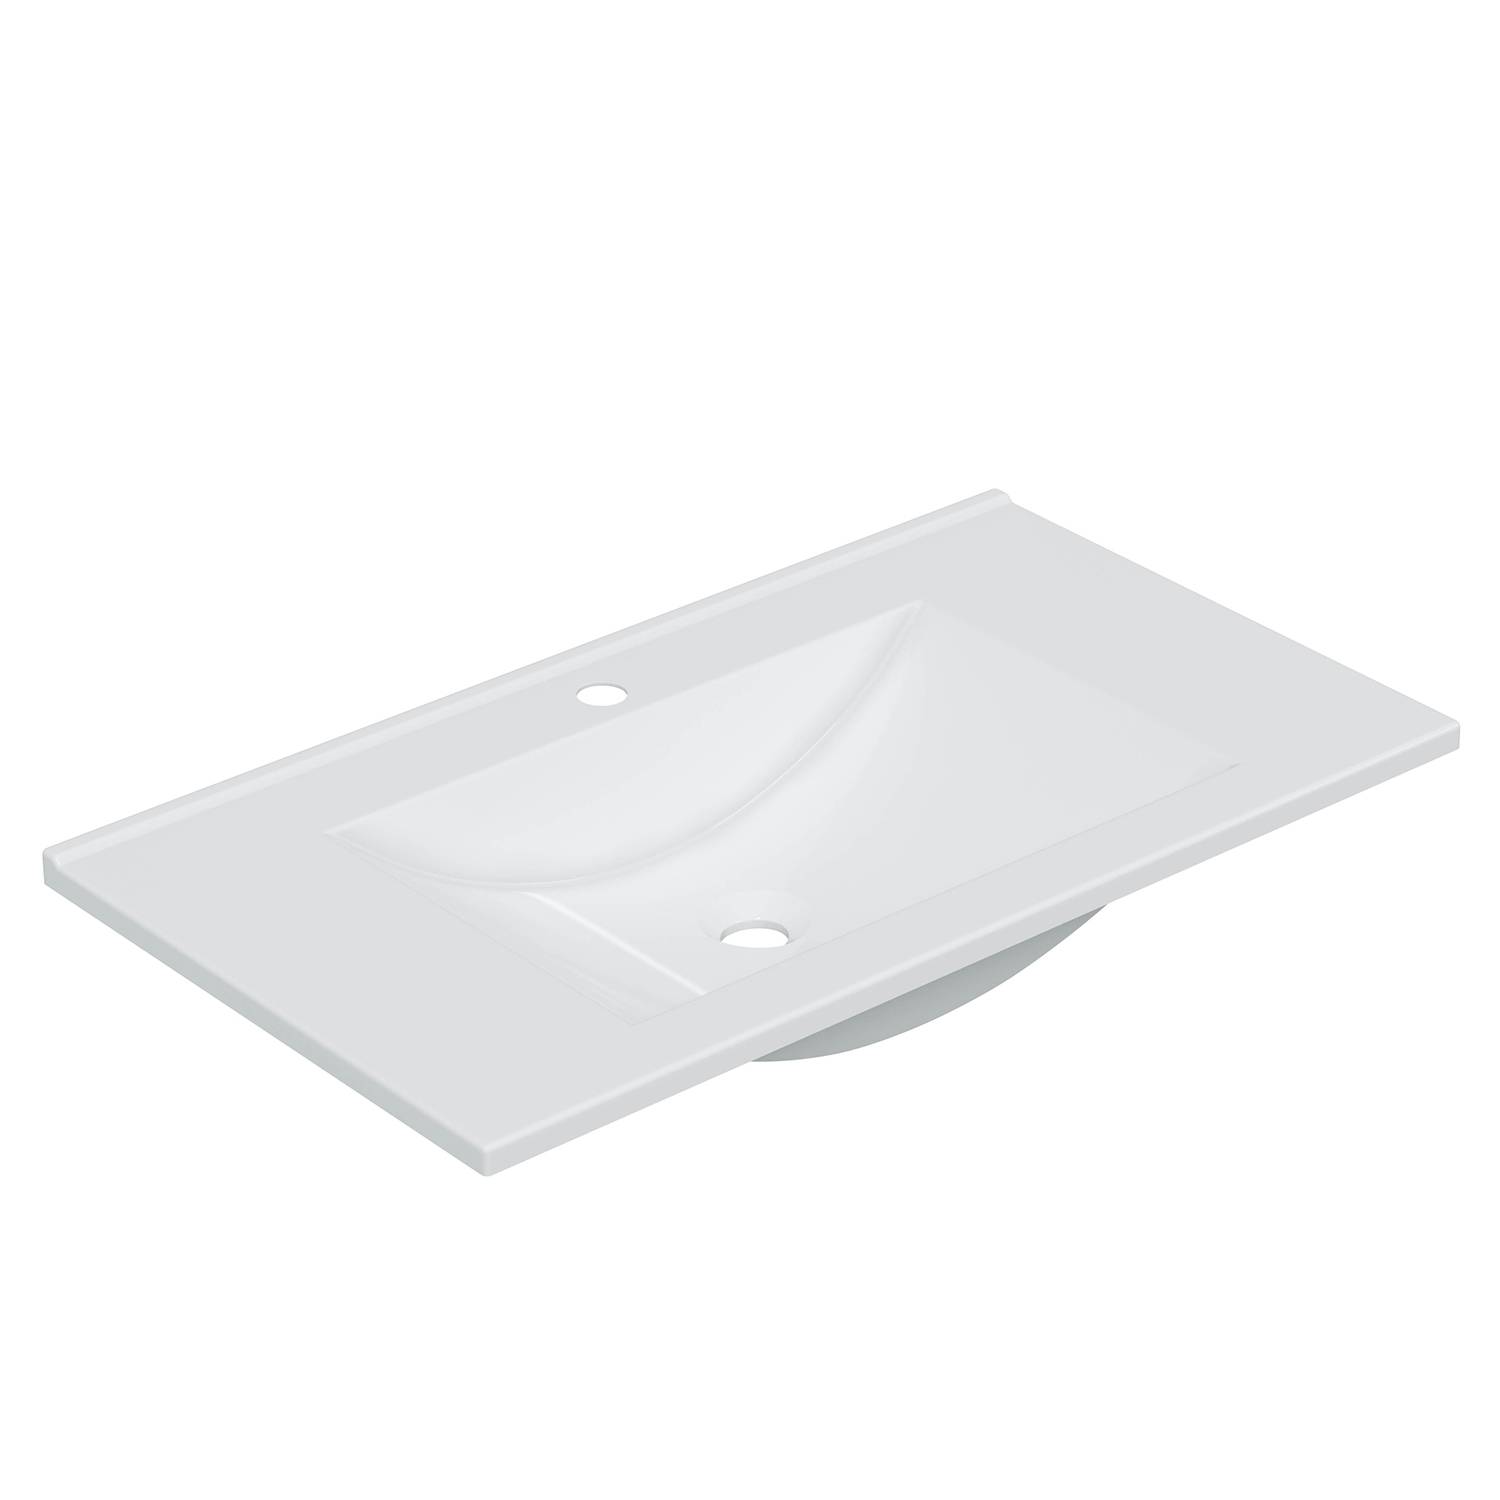 Mueble baño luis 1p1c 80cm color blanco brillo con espejo, sin lavabo -  Topambientes 2023